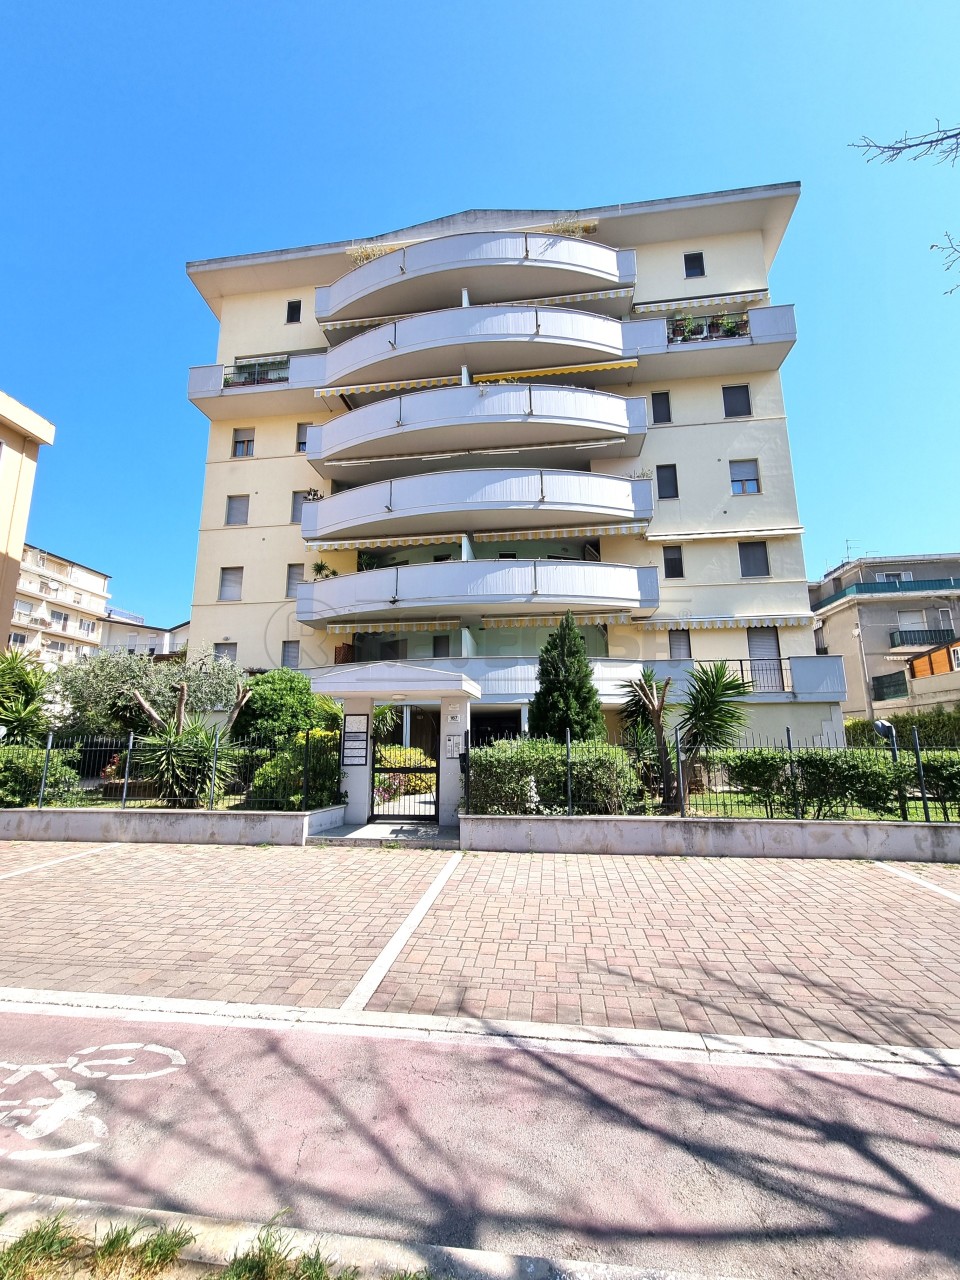 Appartamento in vendita a Pescara, 2 locali, prezzo € 185.000 | PortaleAgenzieImmobiliari.it